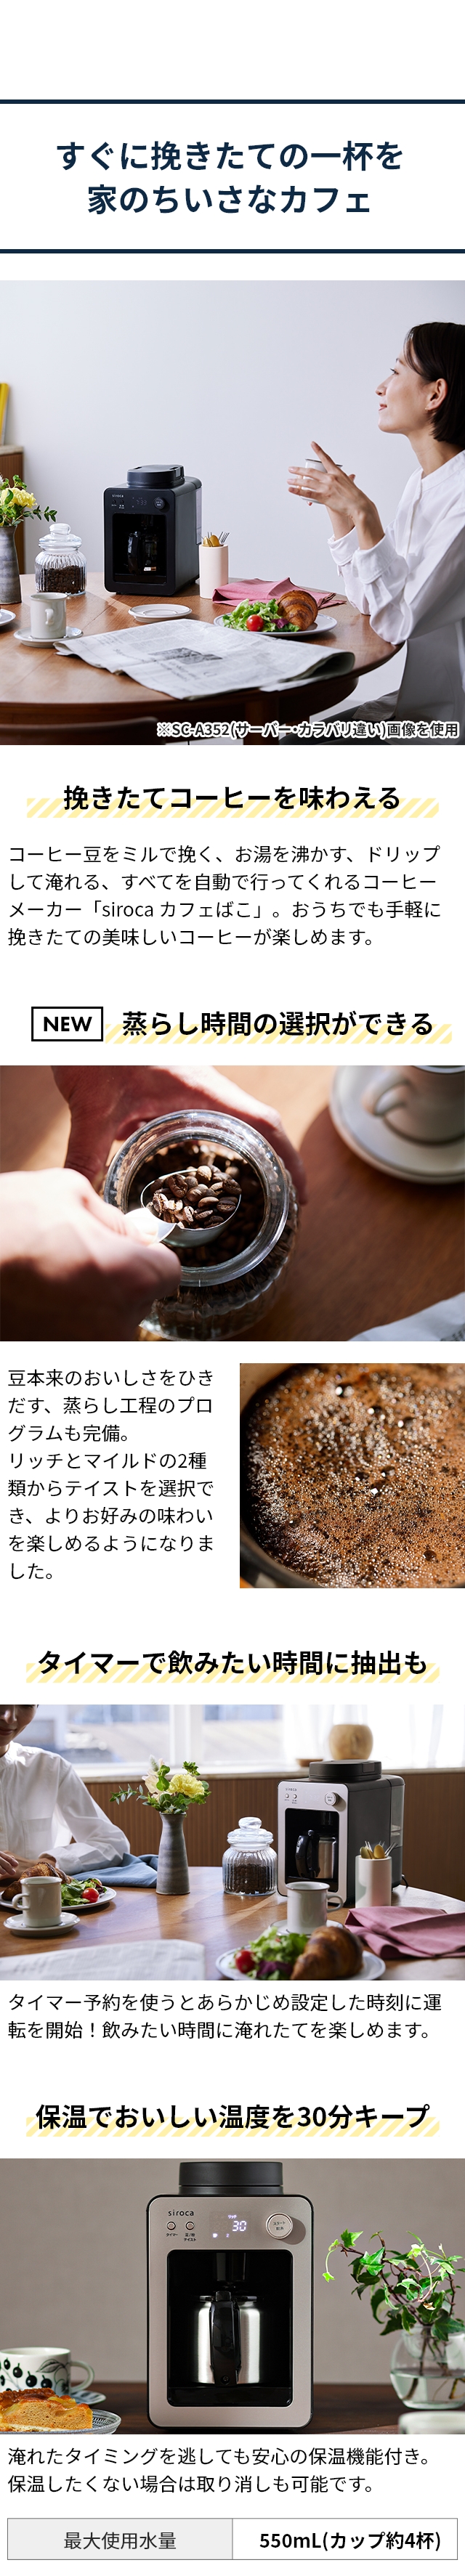 siroca (シロカ) 全自動コーヒーメーカー カフェばこ SC-A372